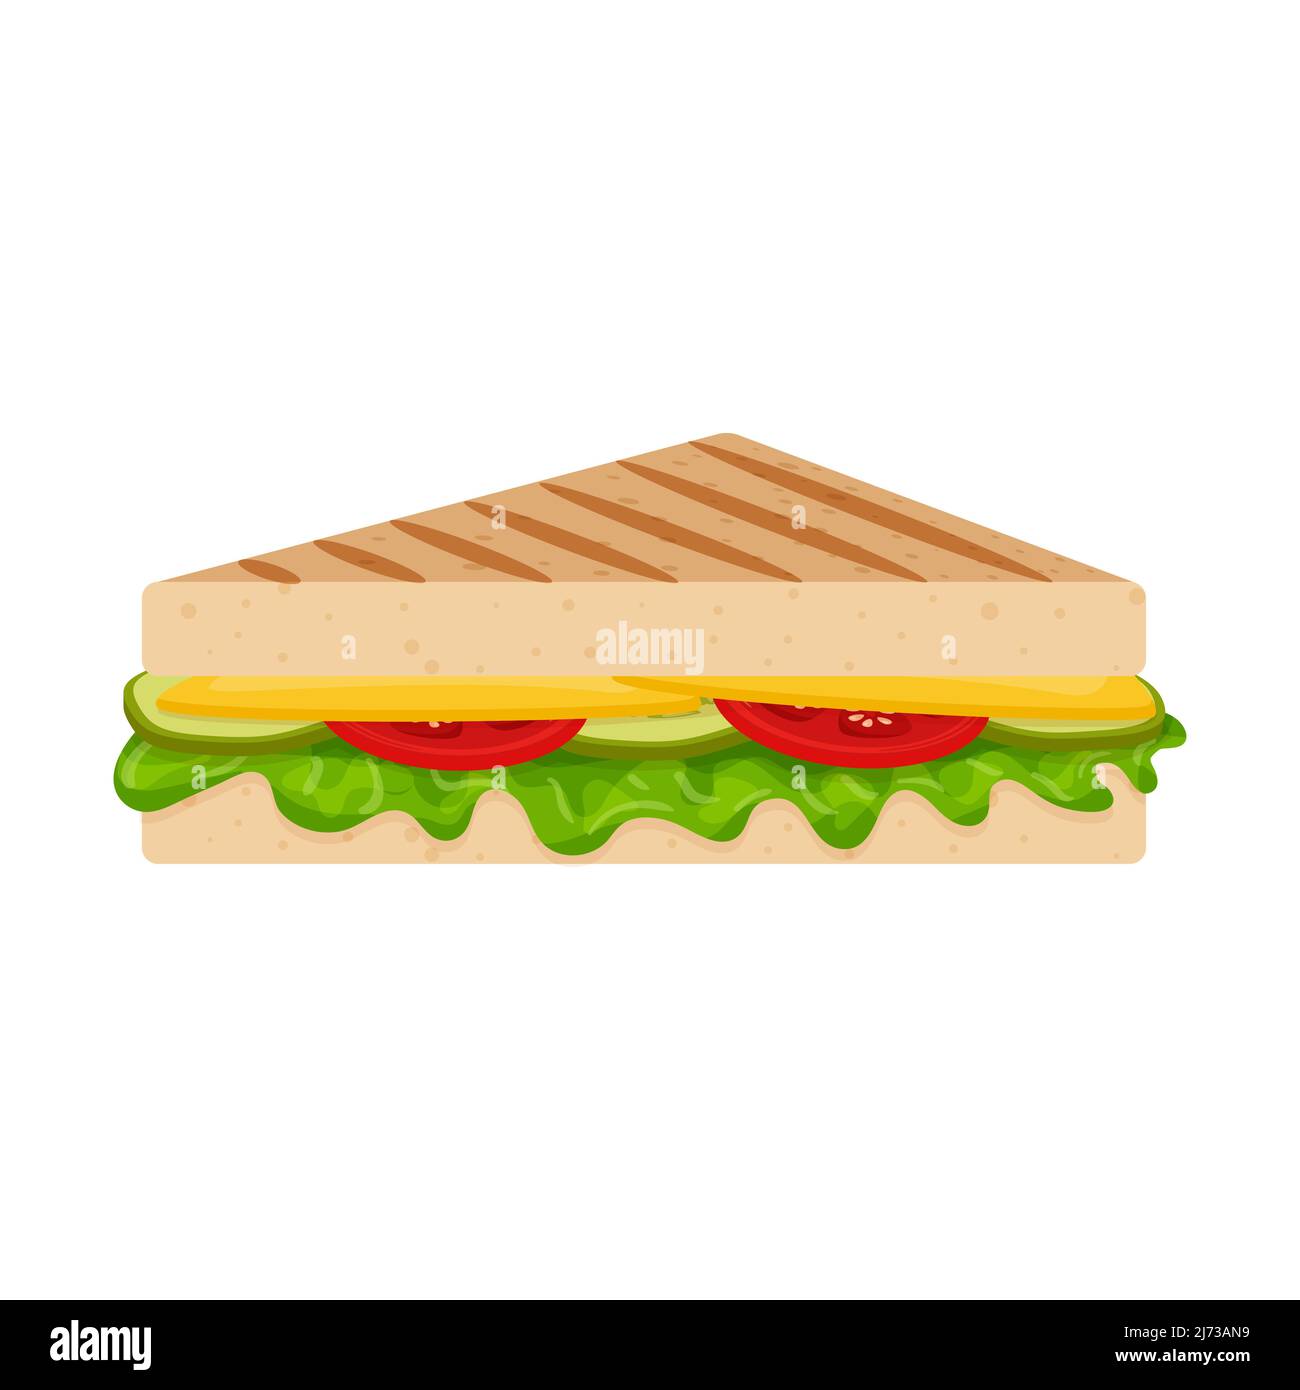 Gegrilltes Sandwich mit Kräutern, Käse, Tomaten und Gurken. Fast Food, Snacks. Flacher Cartoon-Stil, isoliert auf einem weißen Hintergrund.Farbvektor illust Stock Vektor